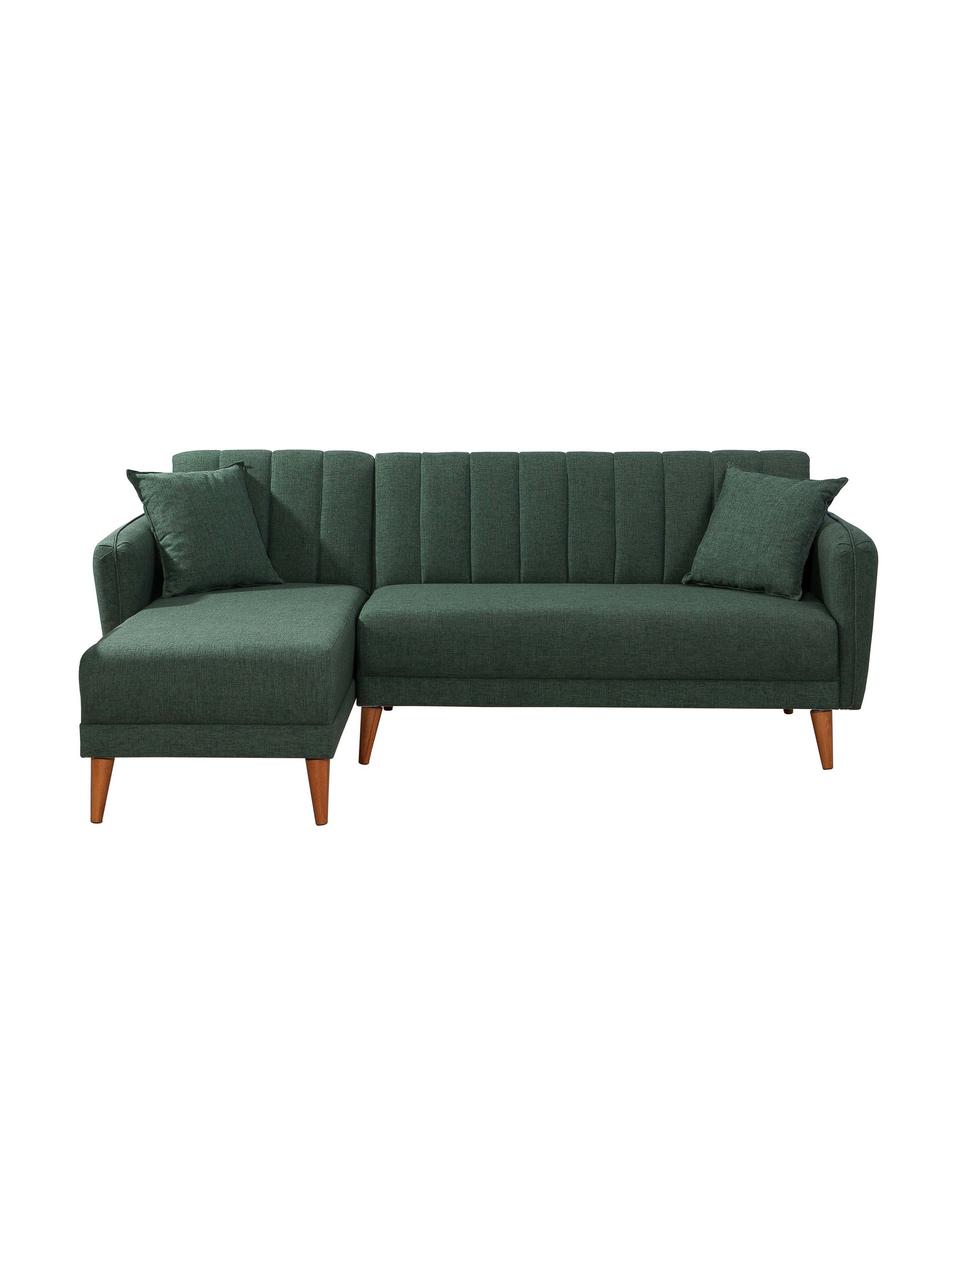 Sofa narożna z lnu z funkcją spania Aqua (3-osobowa), Tapicerka: len, Stelaż: drewno rogowe, metal, Nogi: drewno naturalne, Zielony, S 225 x G 145 cm